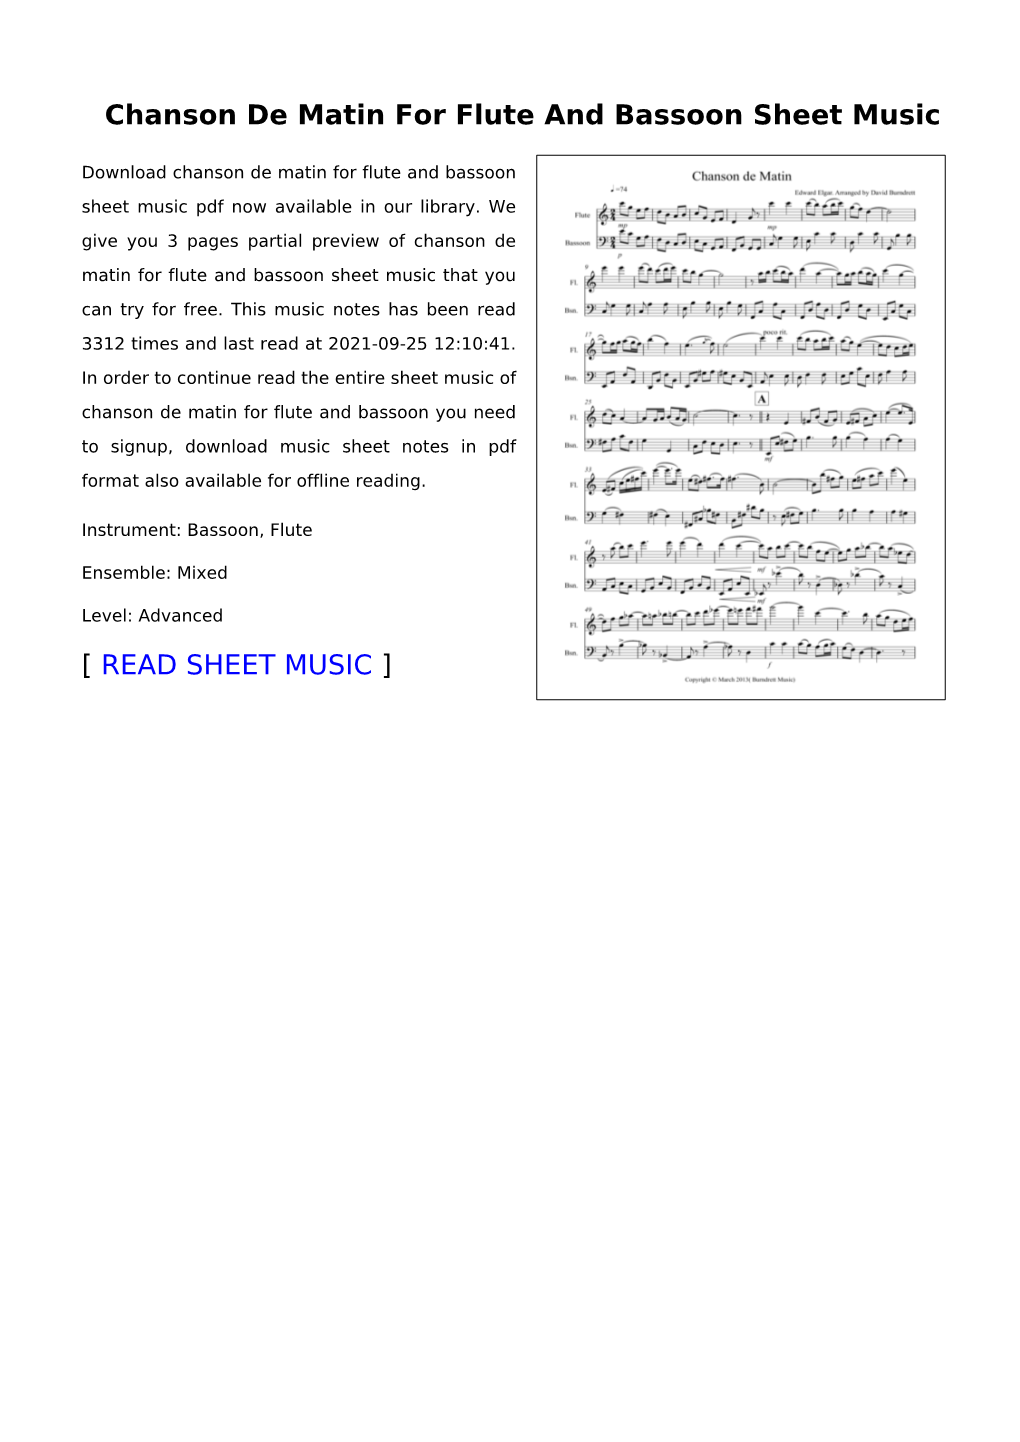 Chanson De Matin for Flute and Bassoon Sheet Music